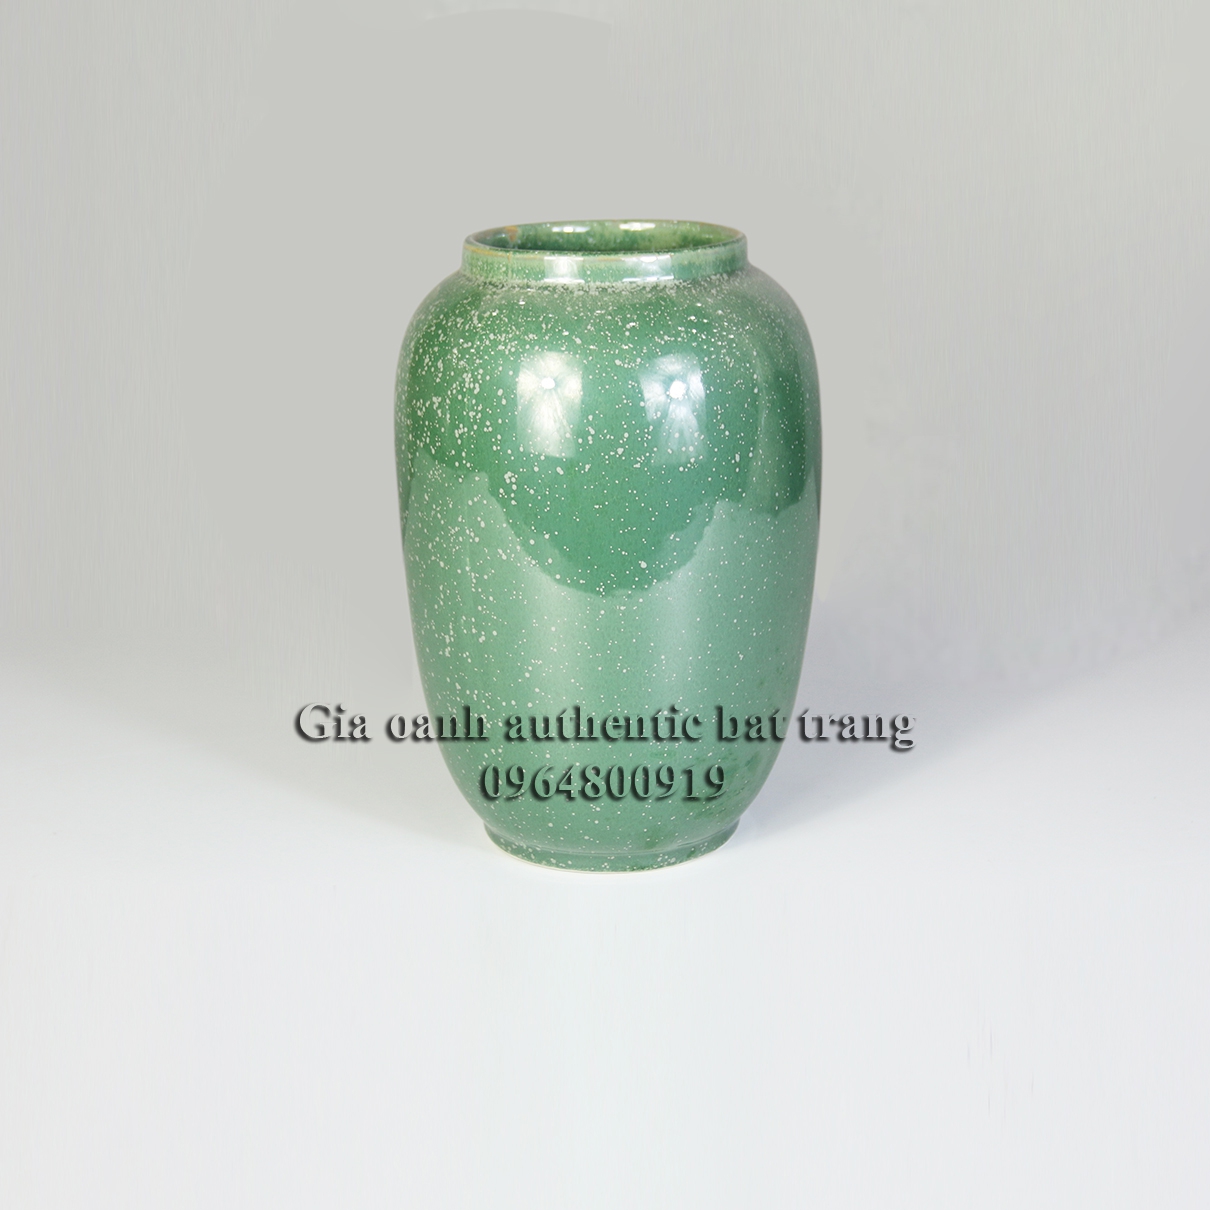 green ceramics vase - Bình cắm hoa men sao - xanh lá tre sản xuất tại xưởng gốm sứ gia oanh authentic bat trang